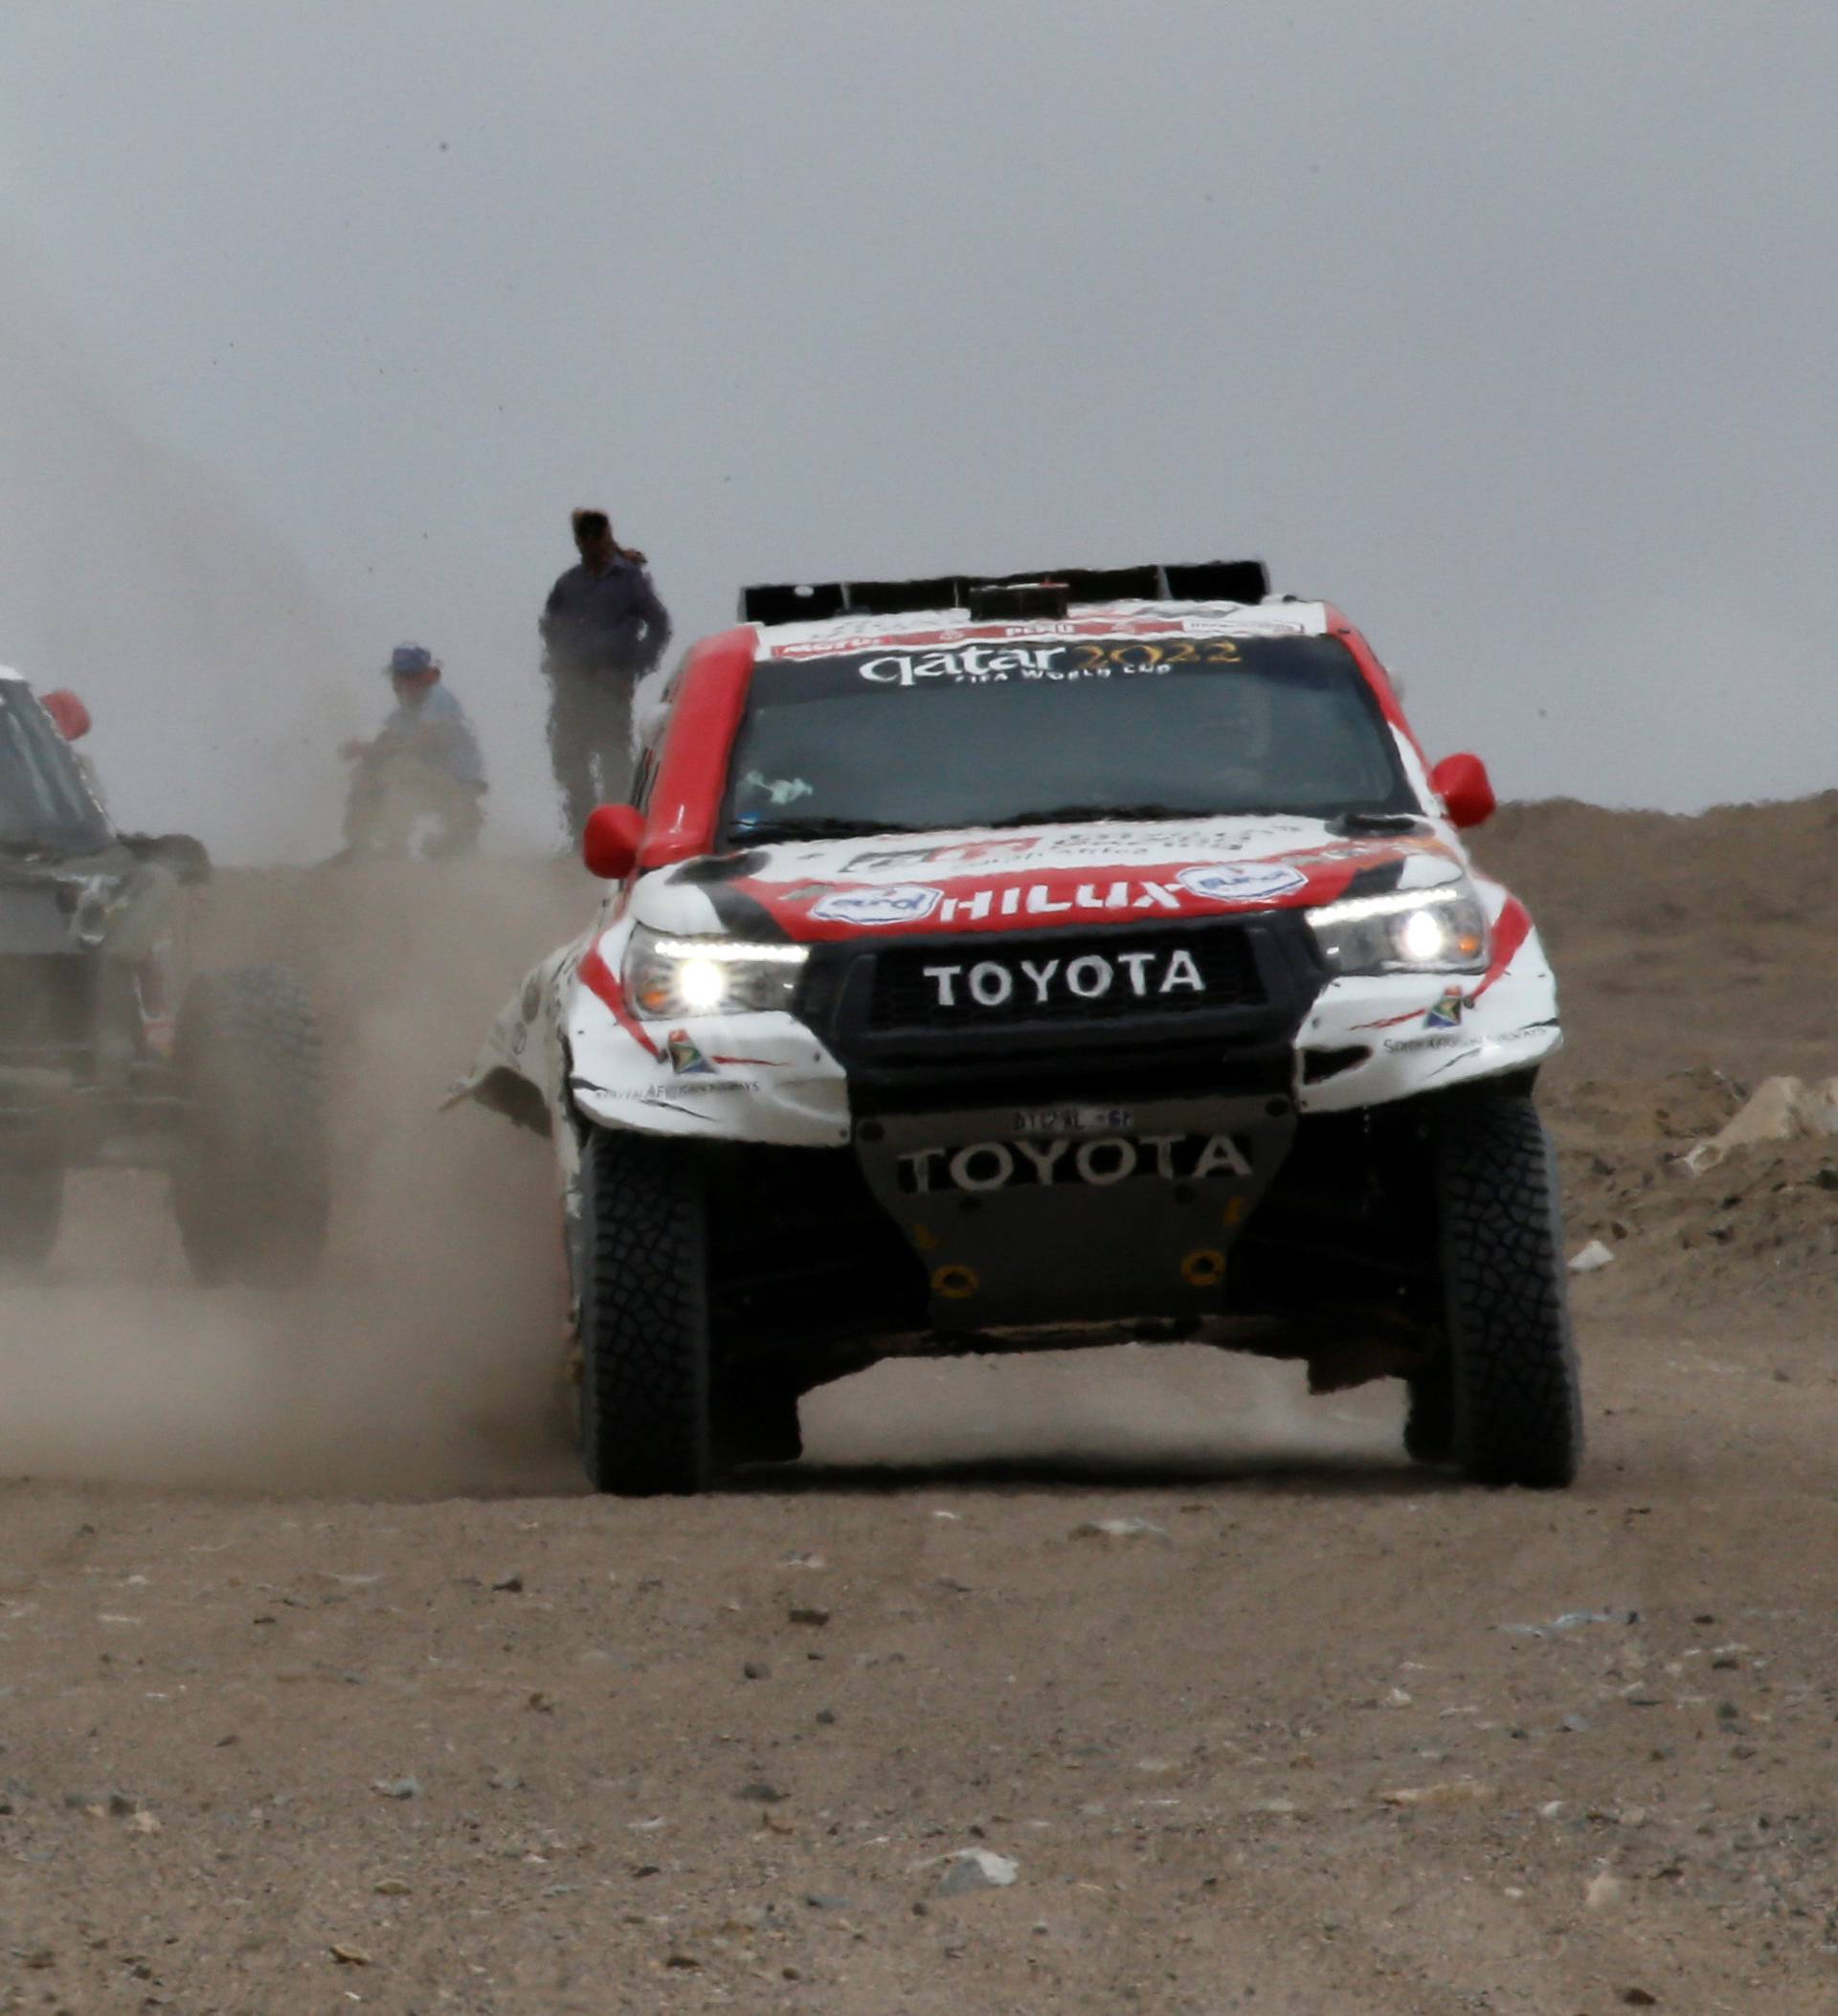 Dakar Rally - 2019 Peru Dakar Rally - Stage 7 San Juan de Marcona, Peru